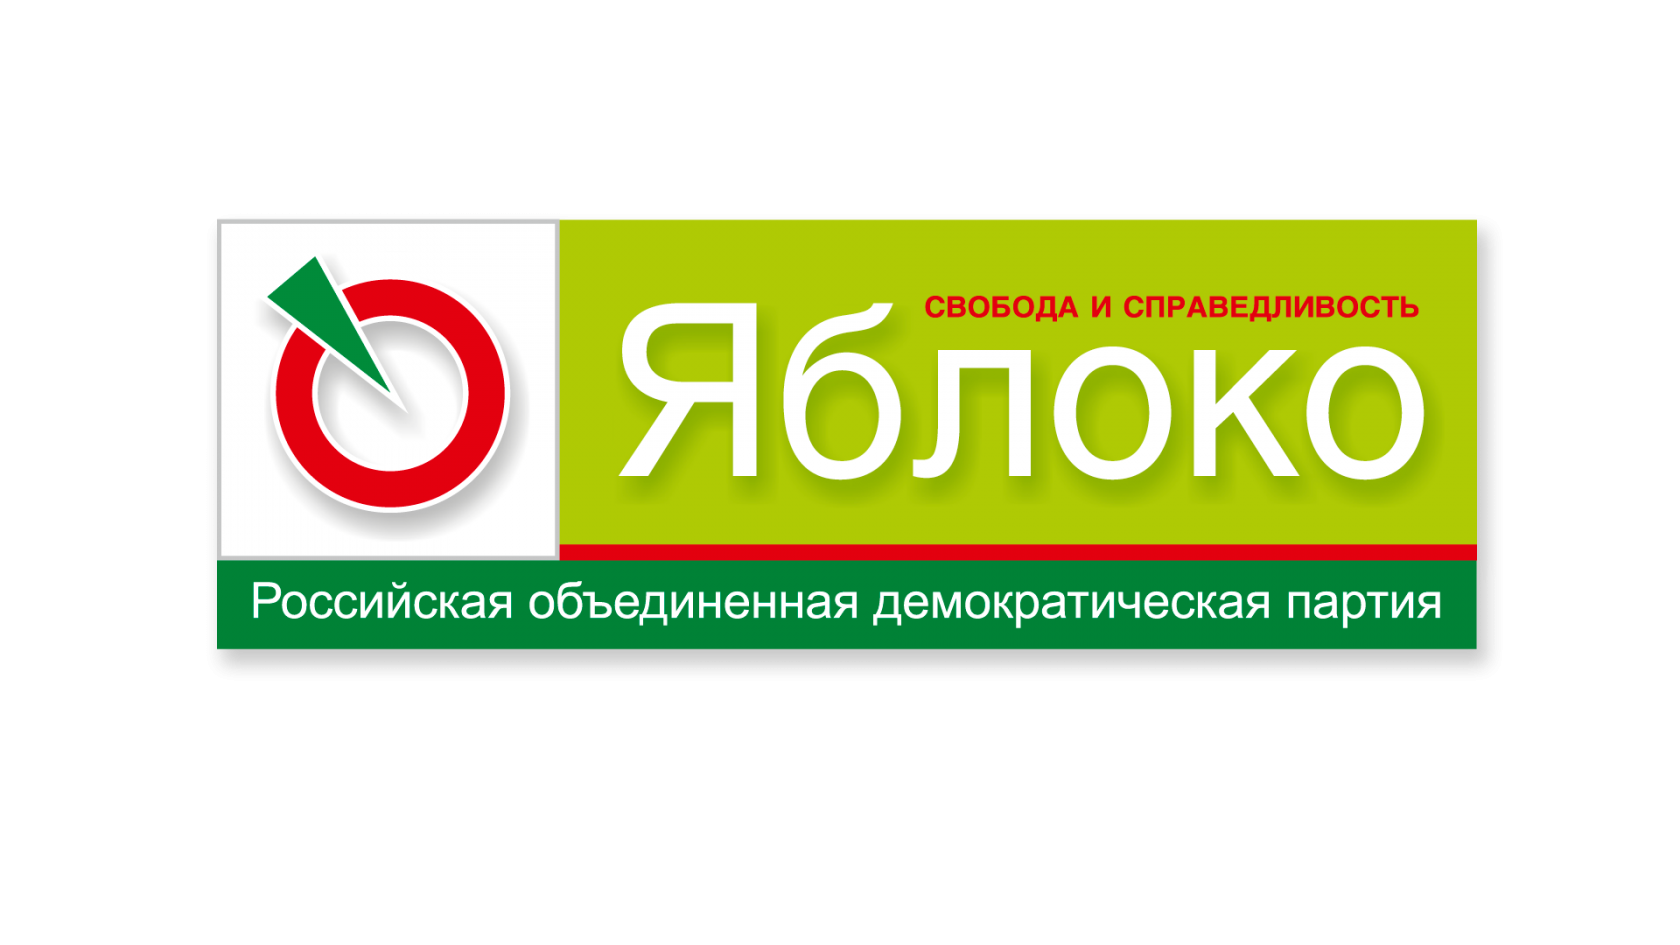 Российская Объединённая Демократическая партия «яблоко». Эмблема партии яблоко. Демократическая партия яблоко логотип.